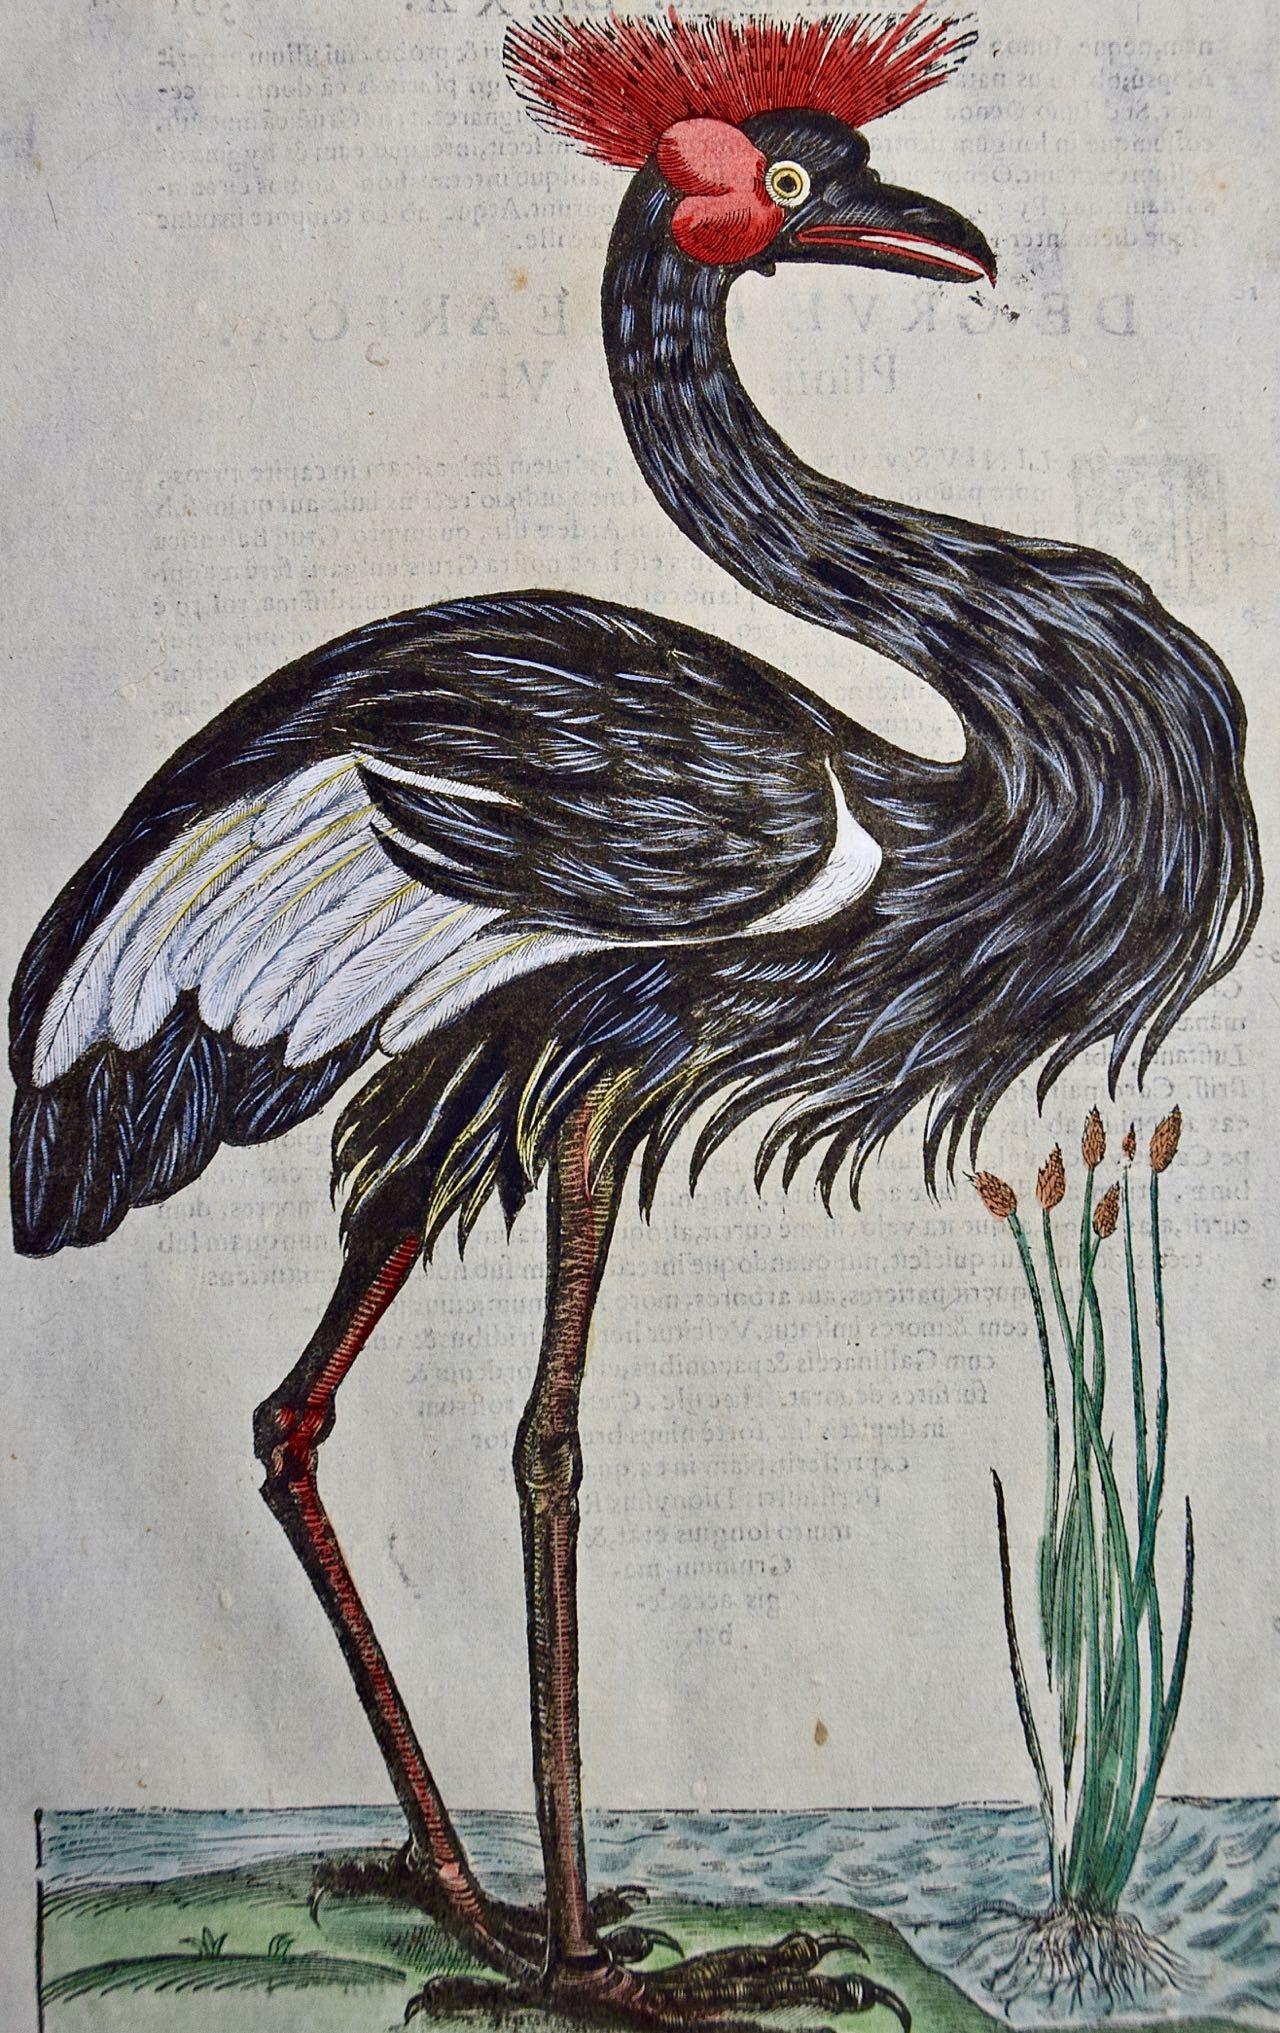 Oiseau héron couronné : Gravure colorée à la main du 16e/17e siècle par Aldrovandi - Print de Ulisse Aldrovandi